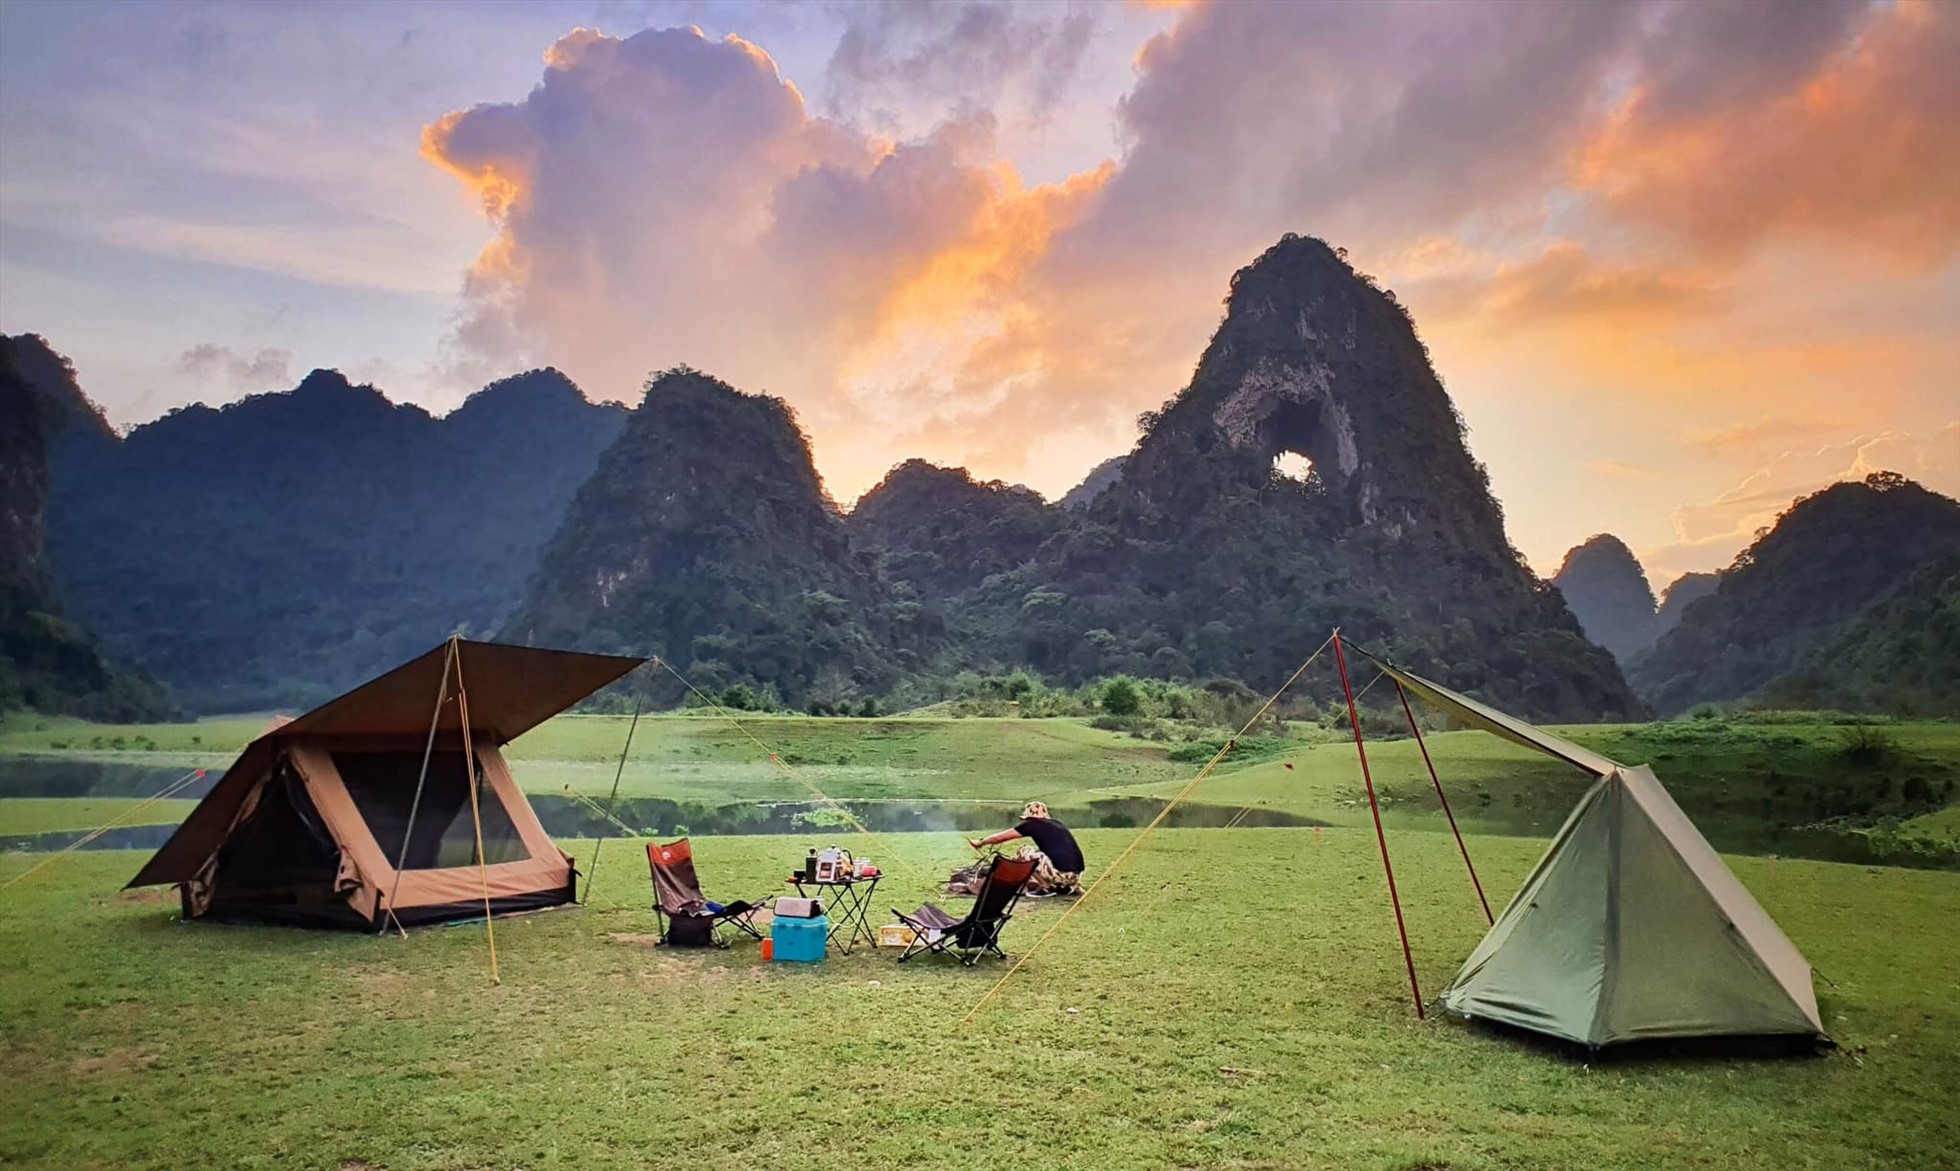 Bãi cỏ ở núi Mắt Thần là địa điểm lý tưởng để cắm trại. Ảnh: Fanpage Non nước Cao Bằng.